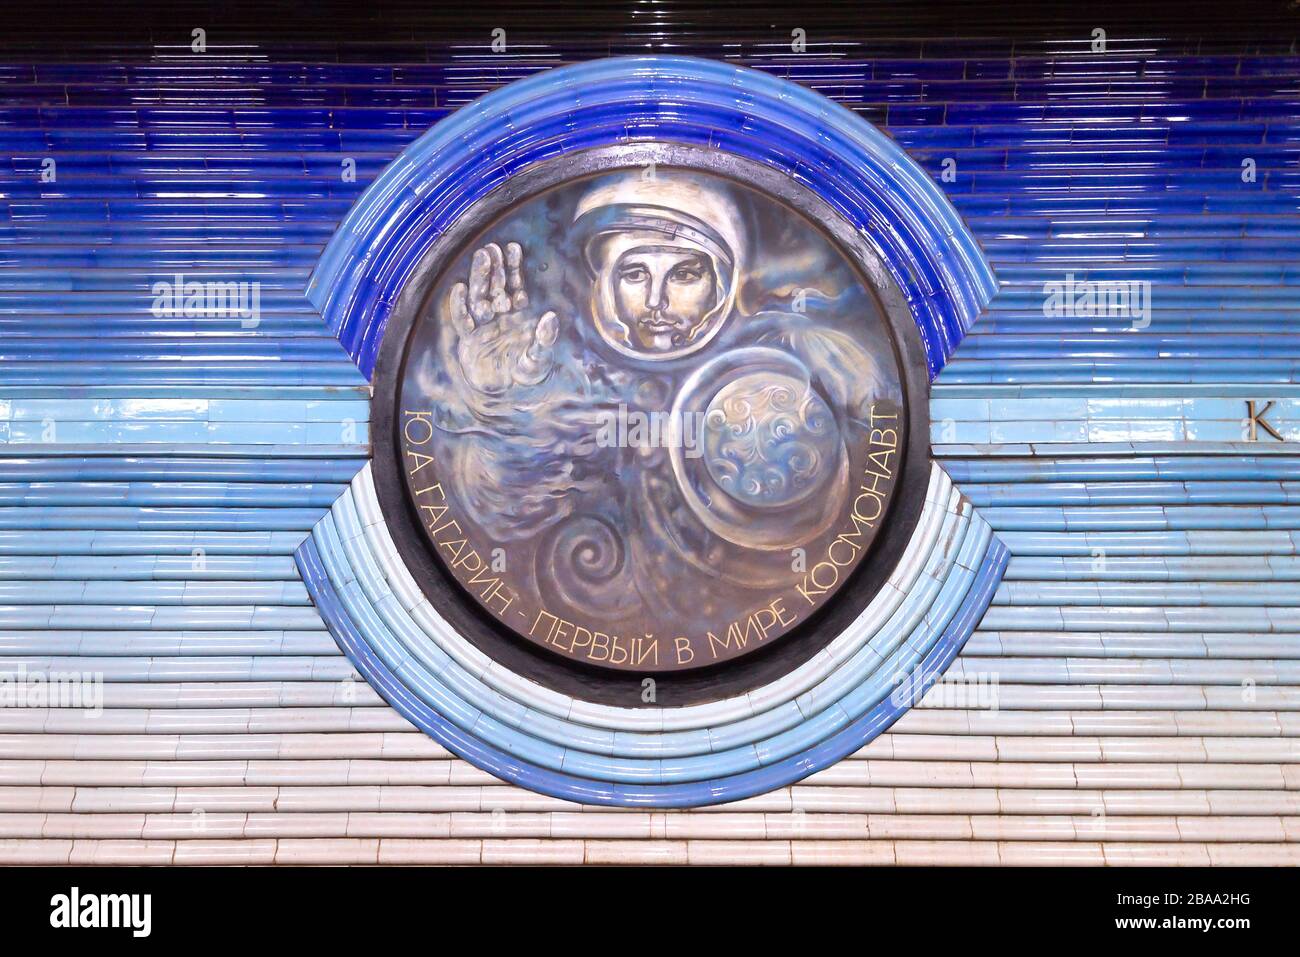 Médaillon de céramique bleue avec image de Yuri Gagarin, cosmonaute soviétique. Décoration détaillée à la station de métro Kosmonavtlar à Tachkent, Ouzbékistan. Banque D'Images